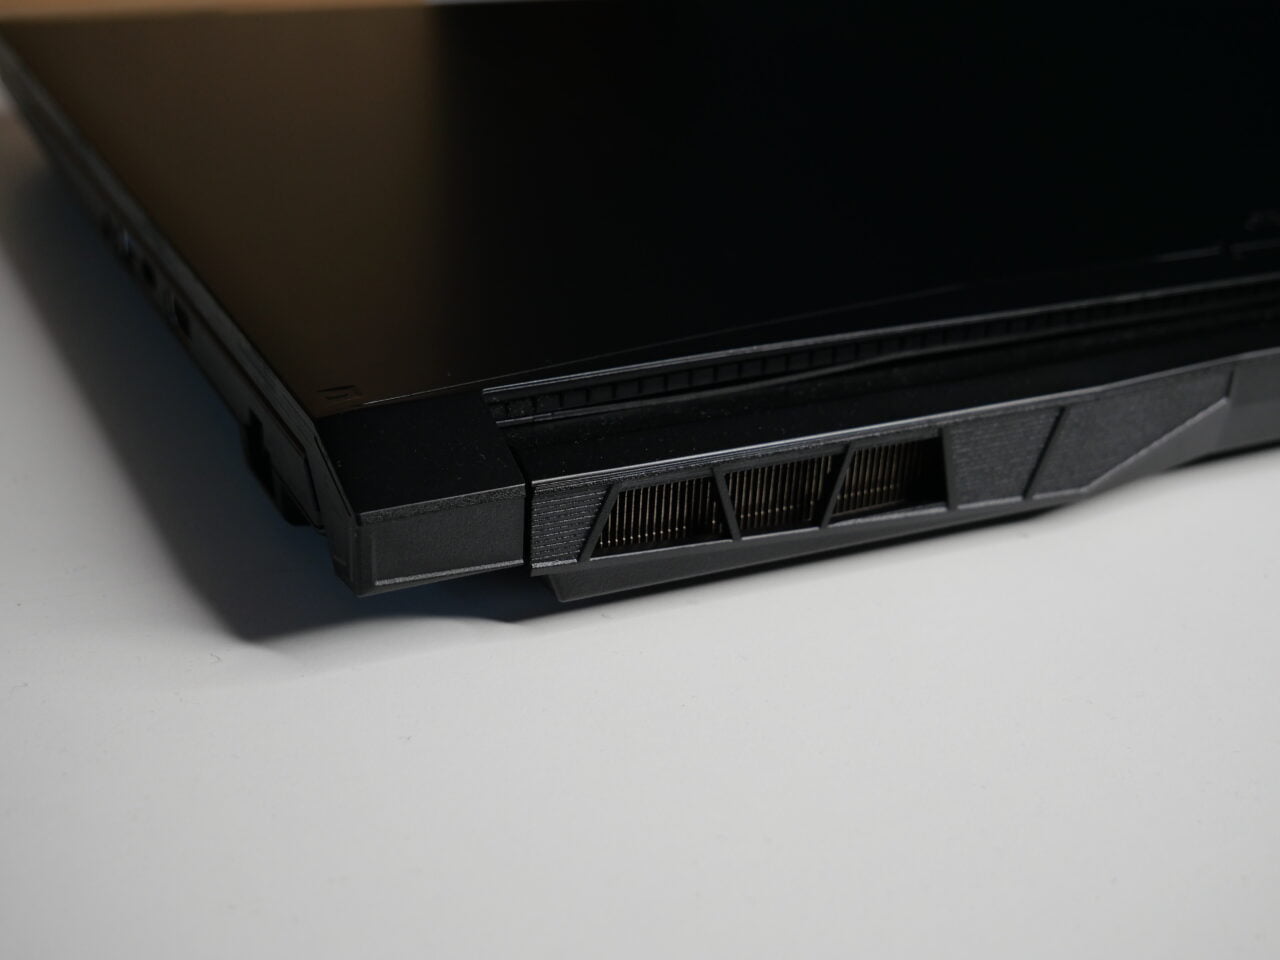 Zbliżenie na tylną część czarnego laptopa, pokazujące otwory wentylacyjne.